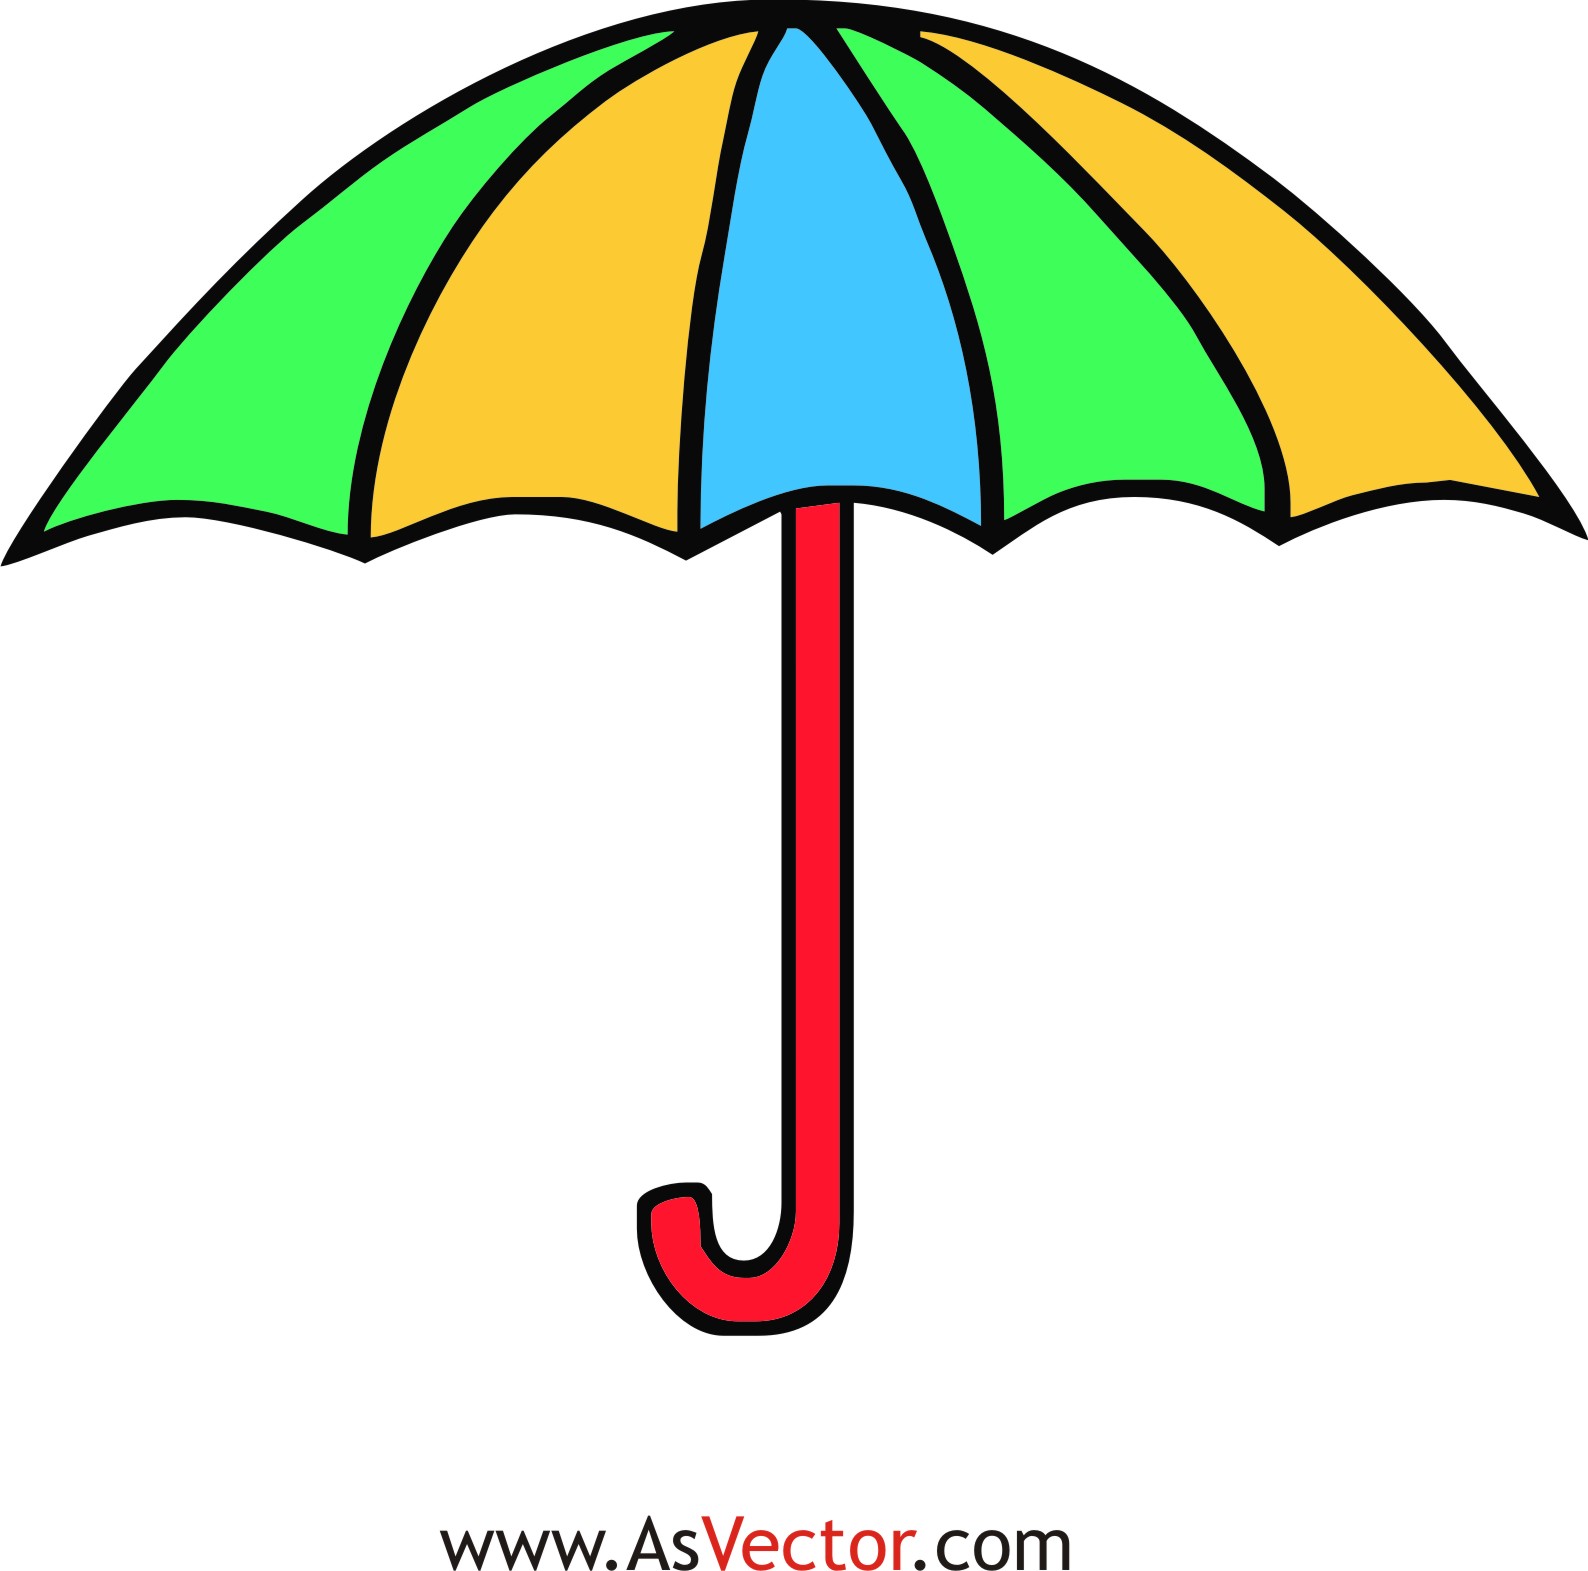 Green cartoon umbrella clipar